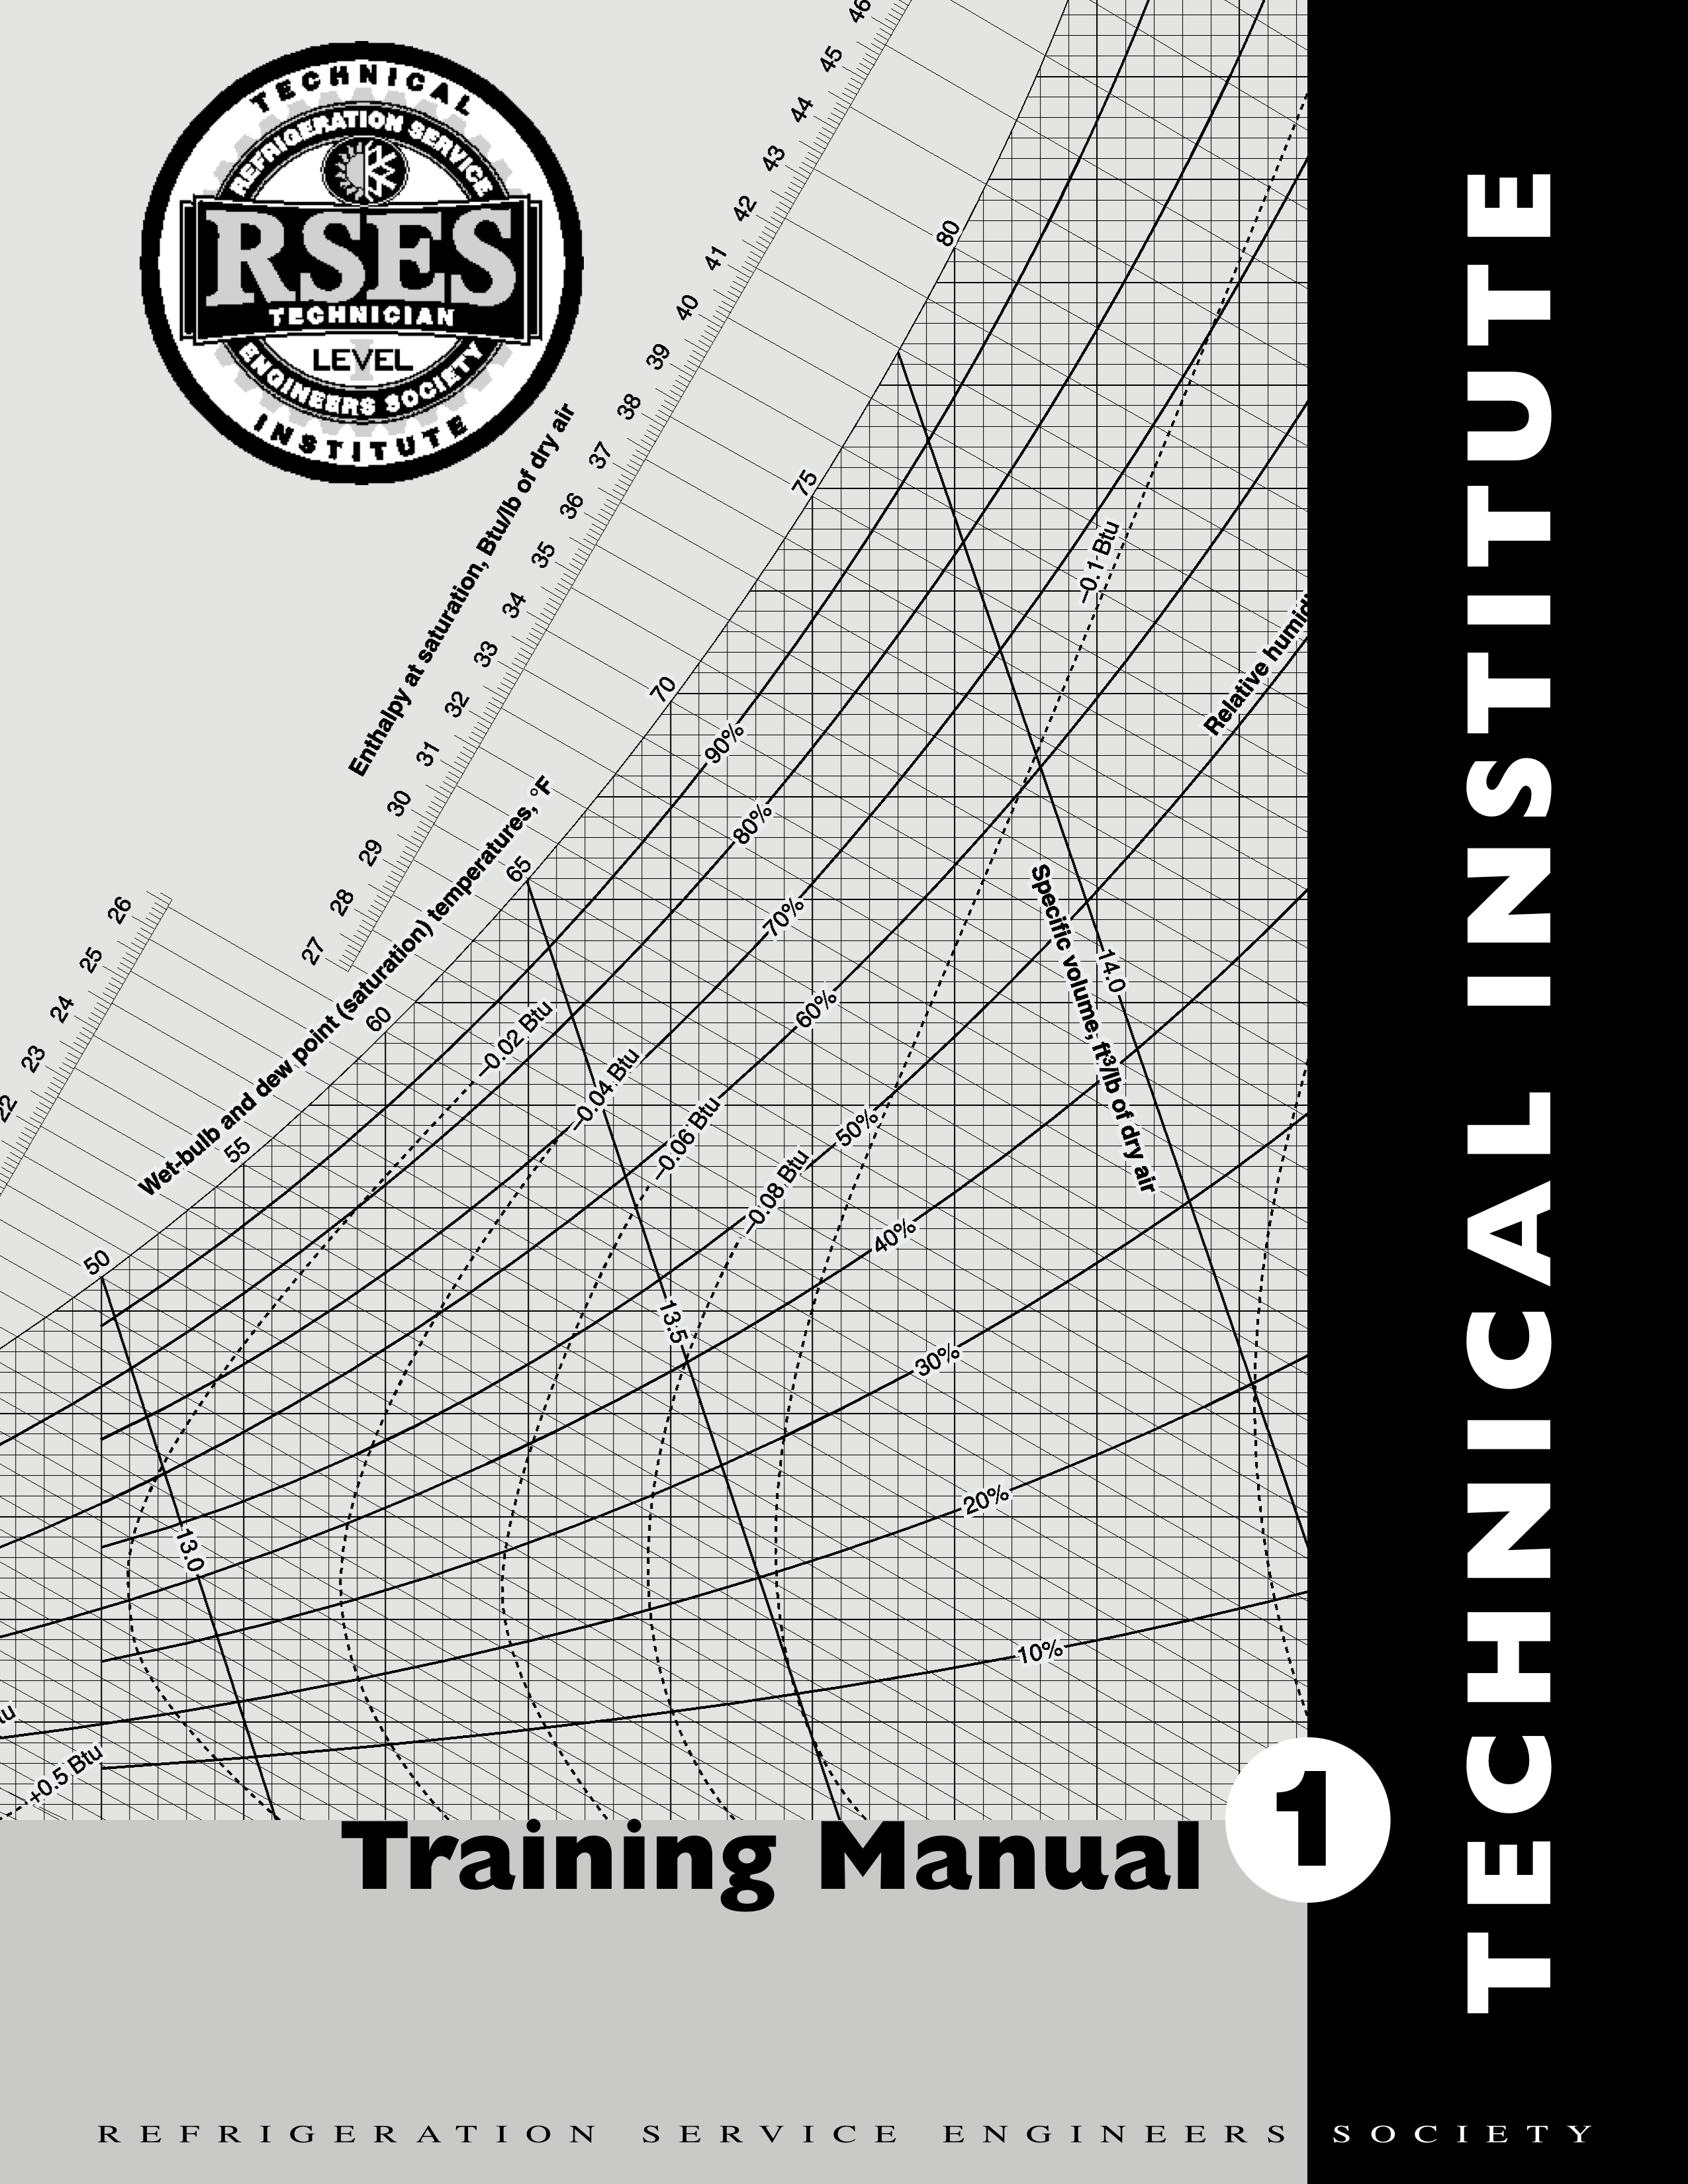 RSES Technical Institute Training Manual 1